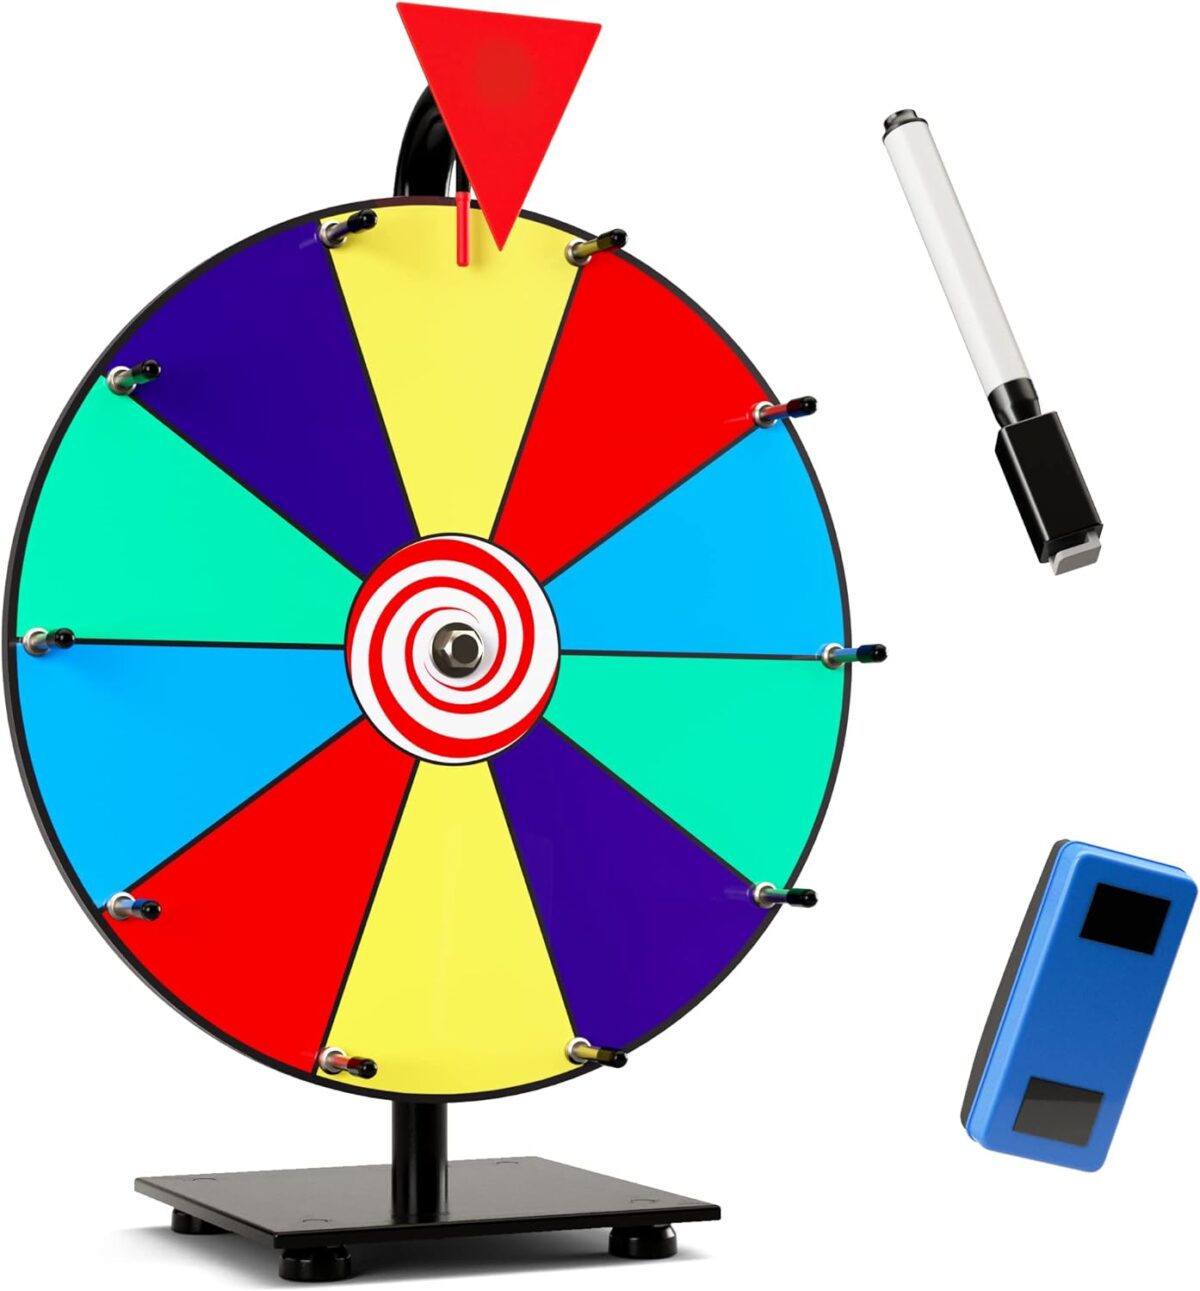 prize wheel